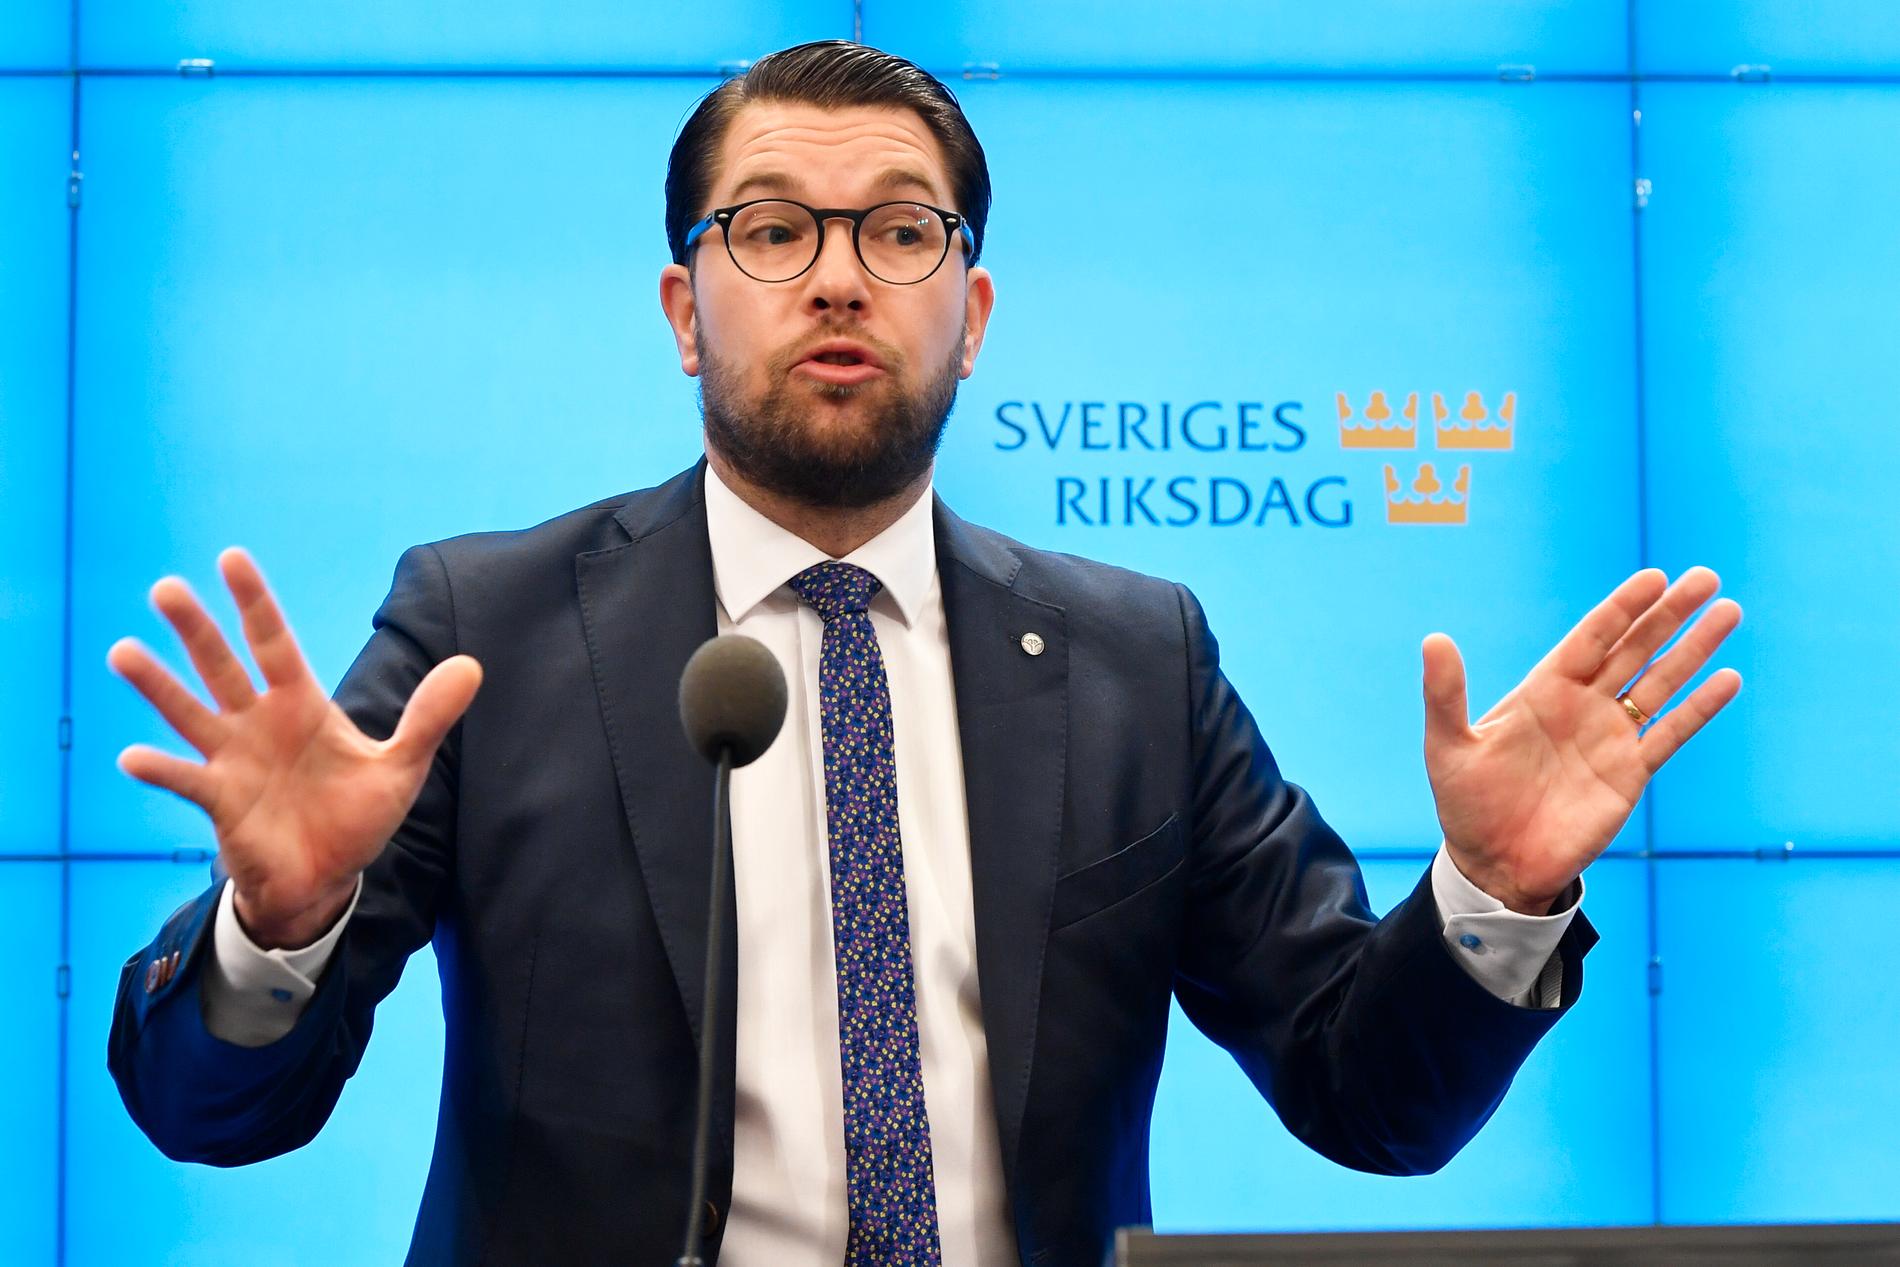 Jimmie Åkessons Sverigedemokraterna får nästan lika många röster som Moderaterna i mätningen.